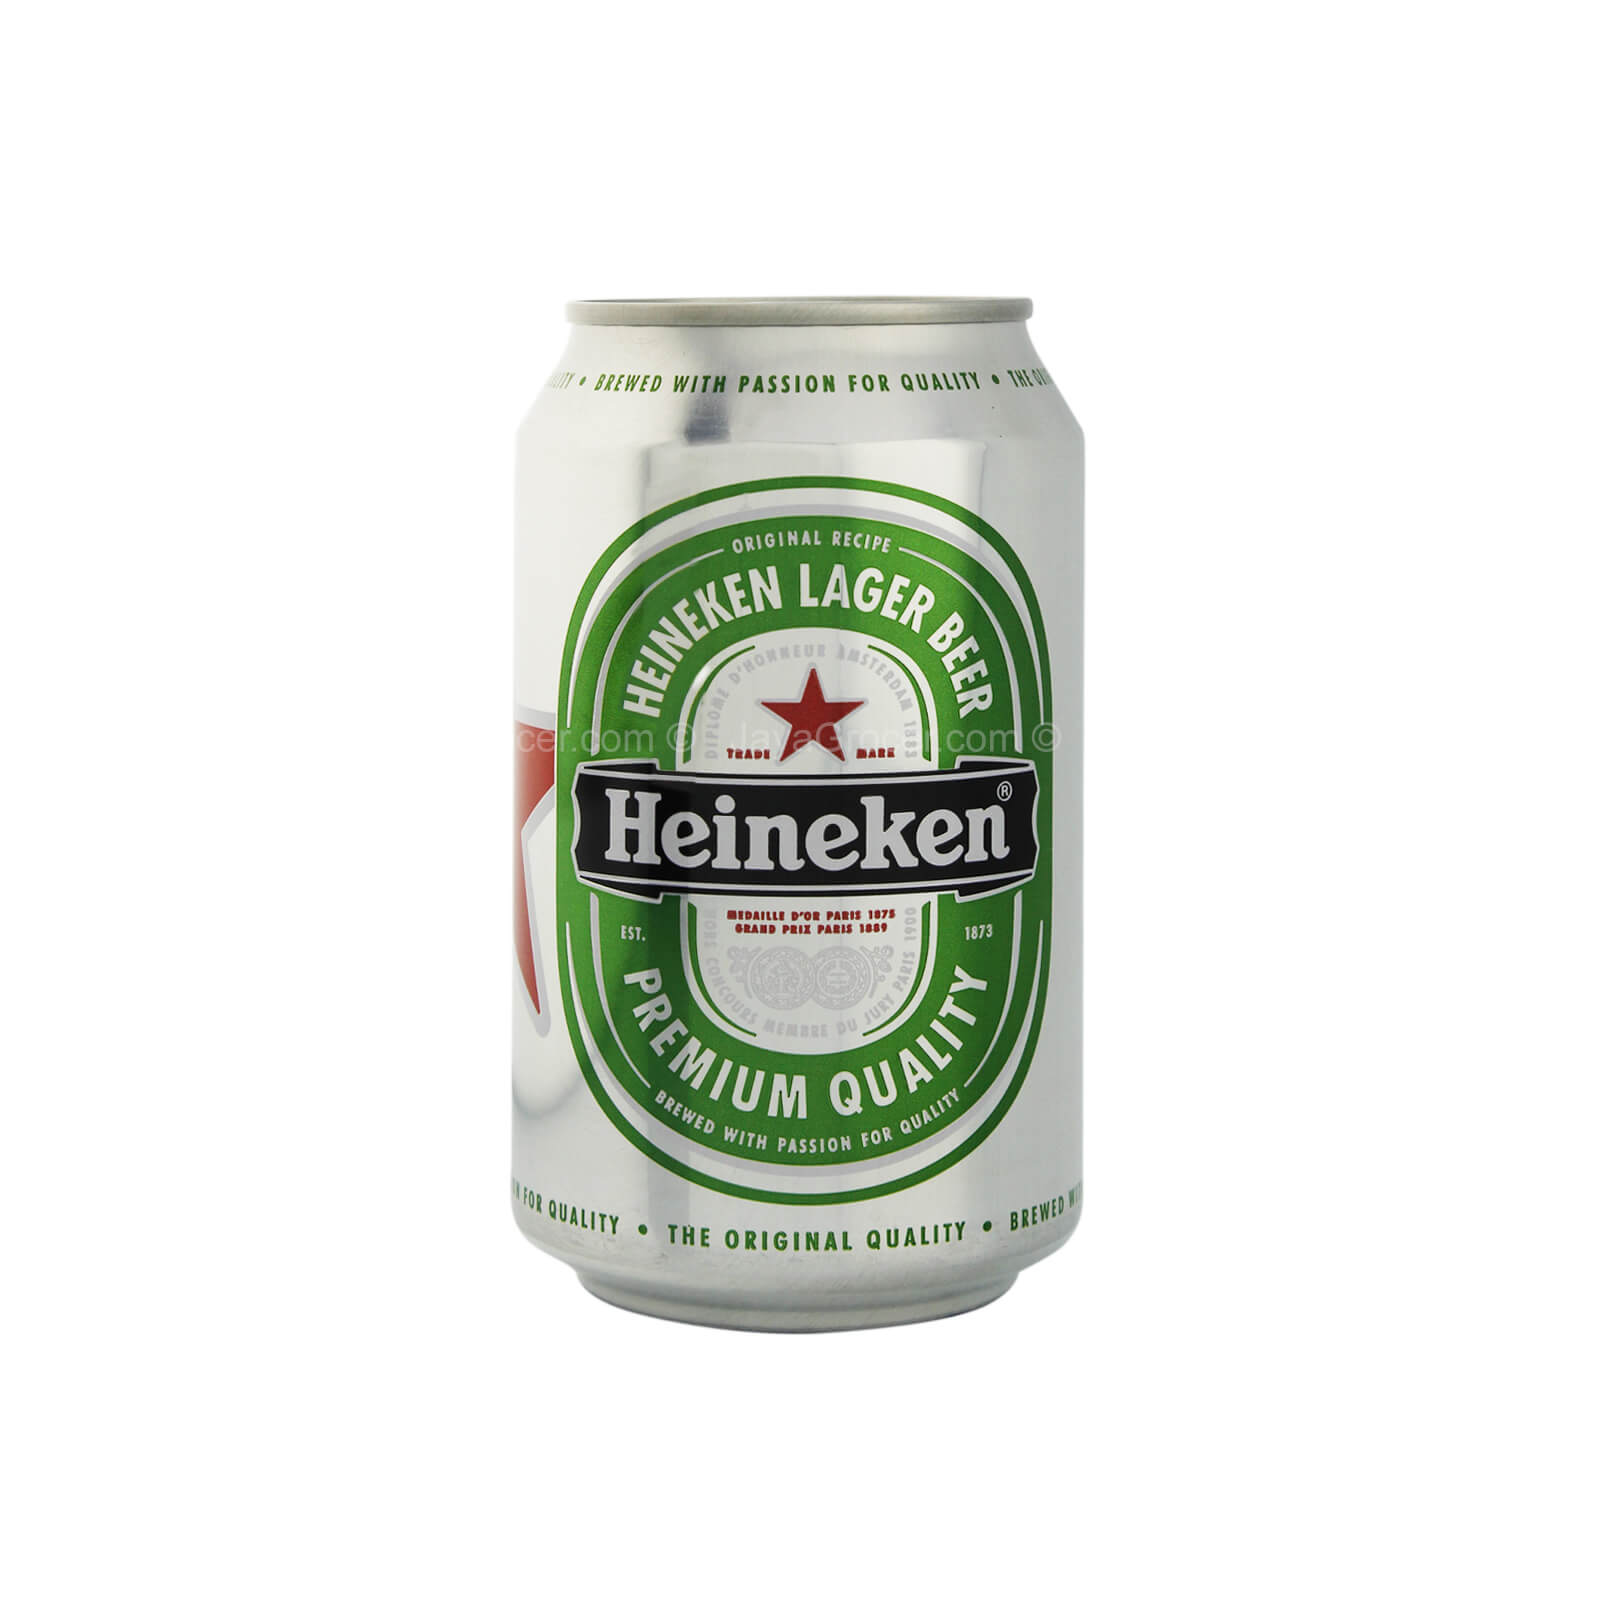 Amazing Heineken Lager Pictures & Backgrounds